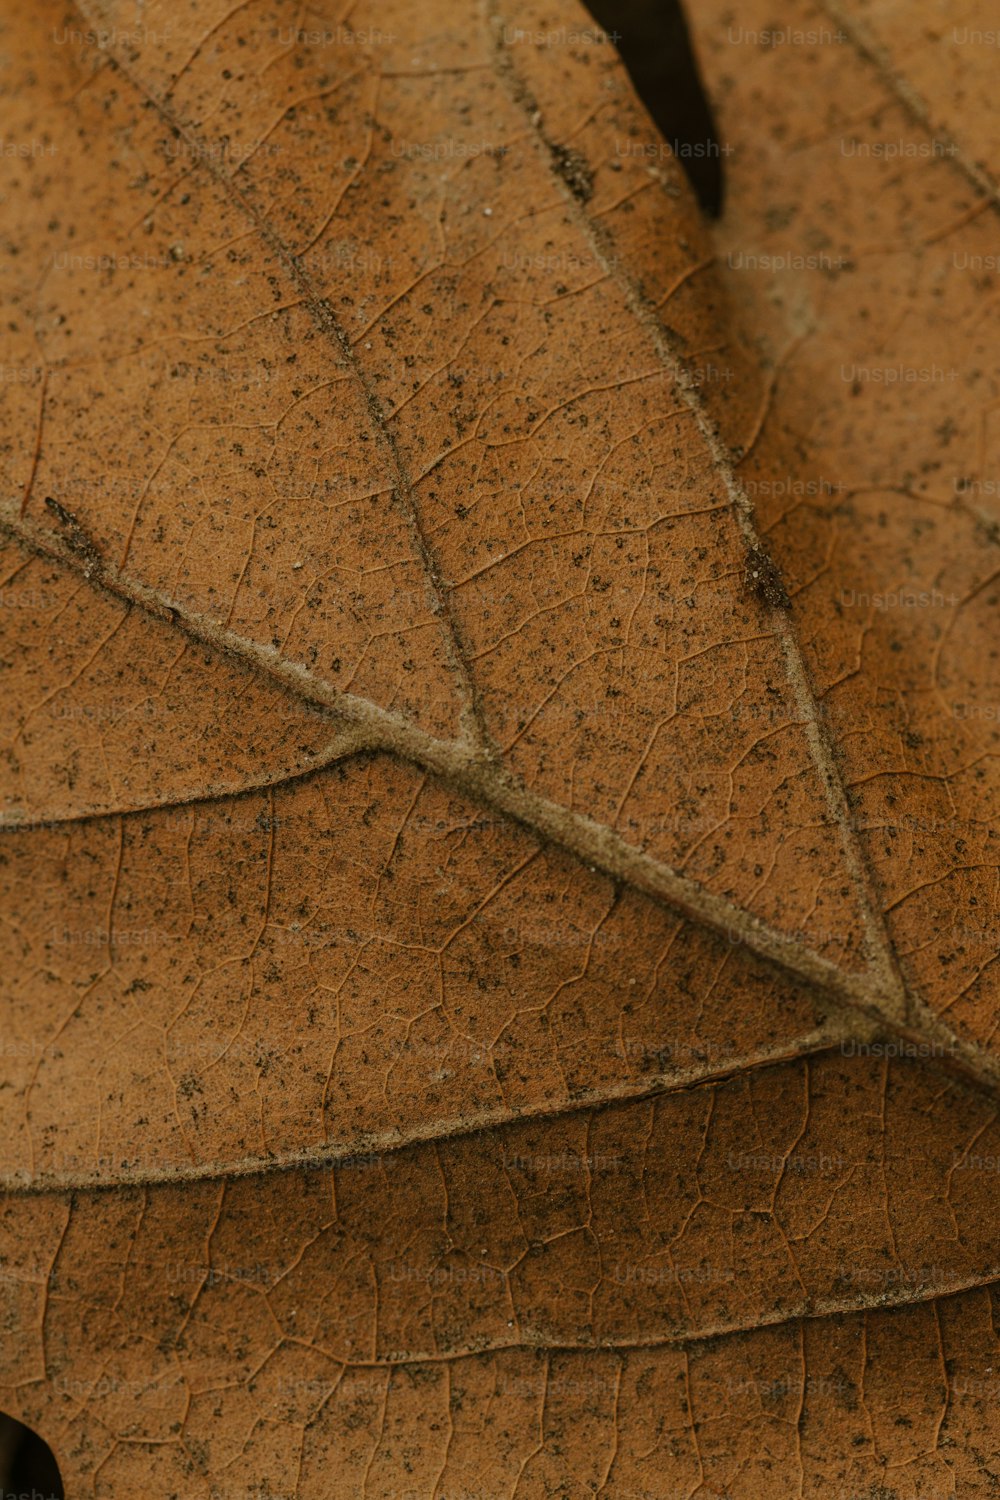 um close up de uma folha marrom com pequenos pontos